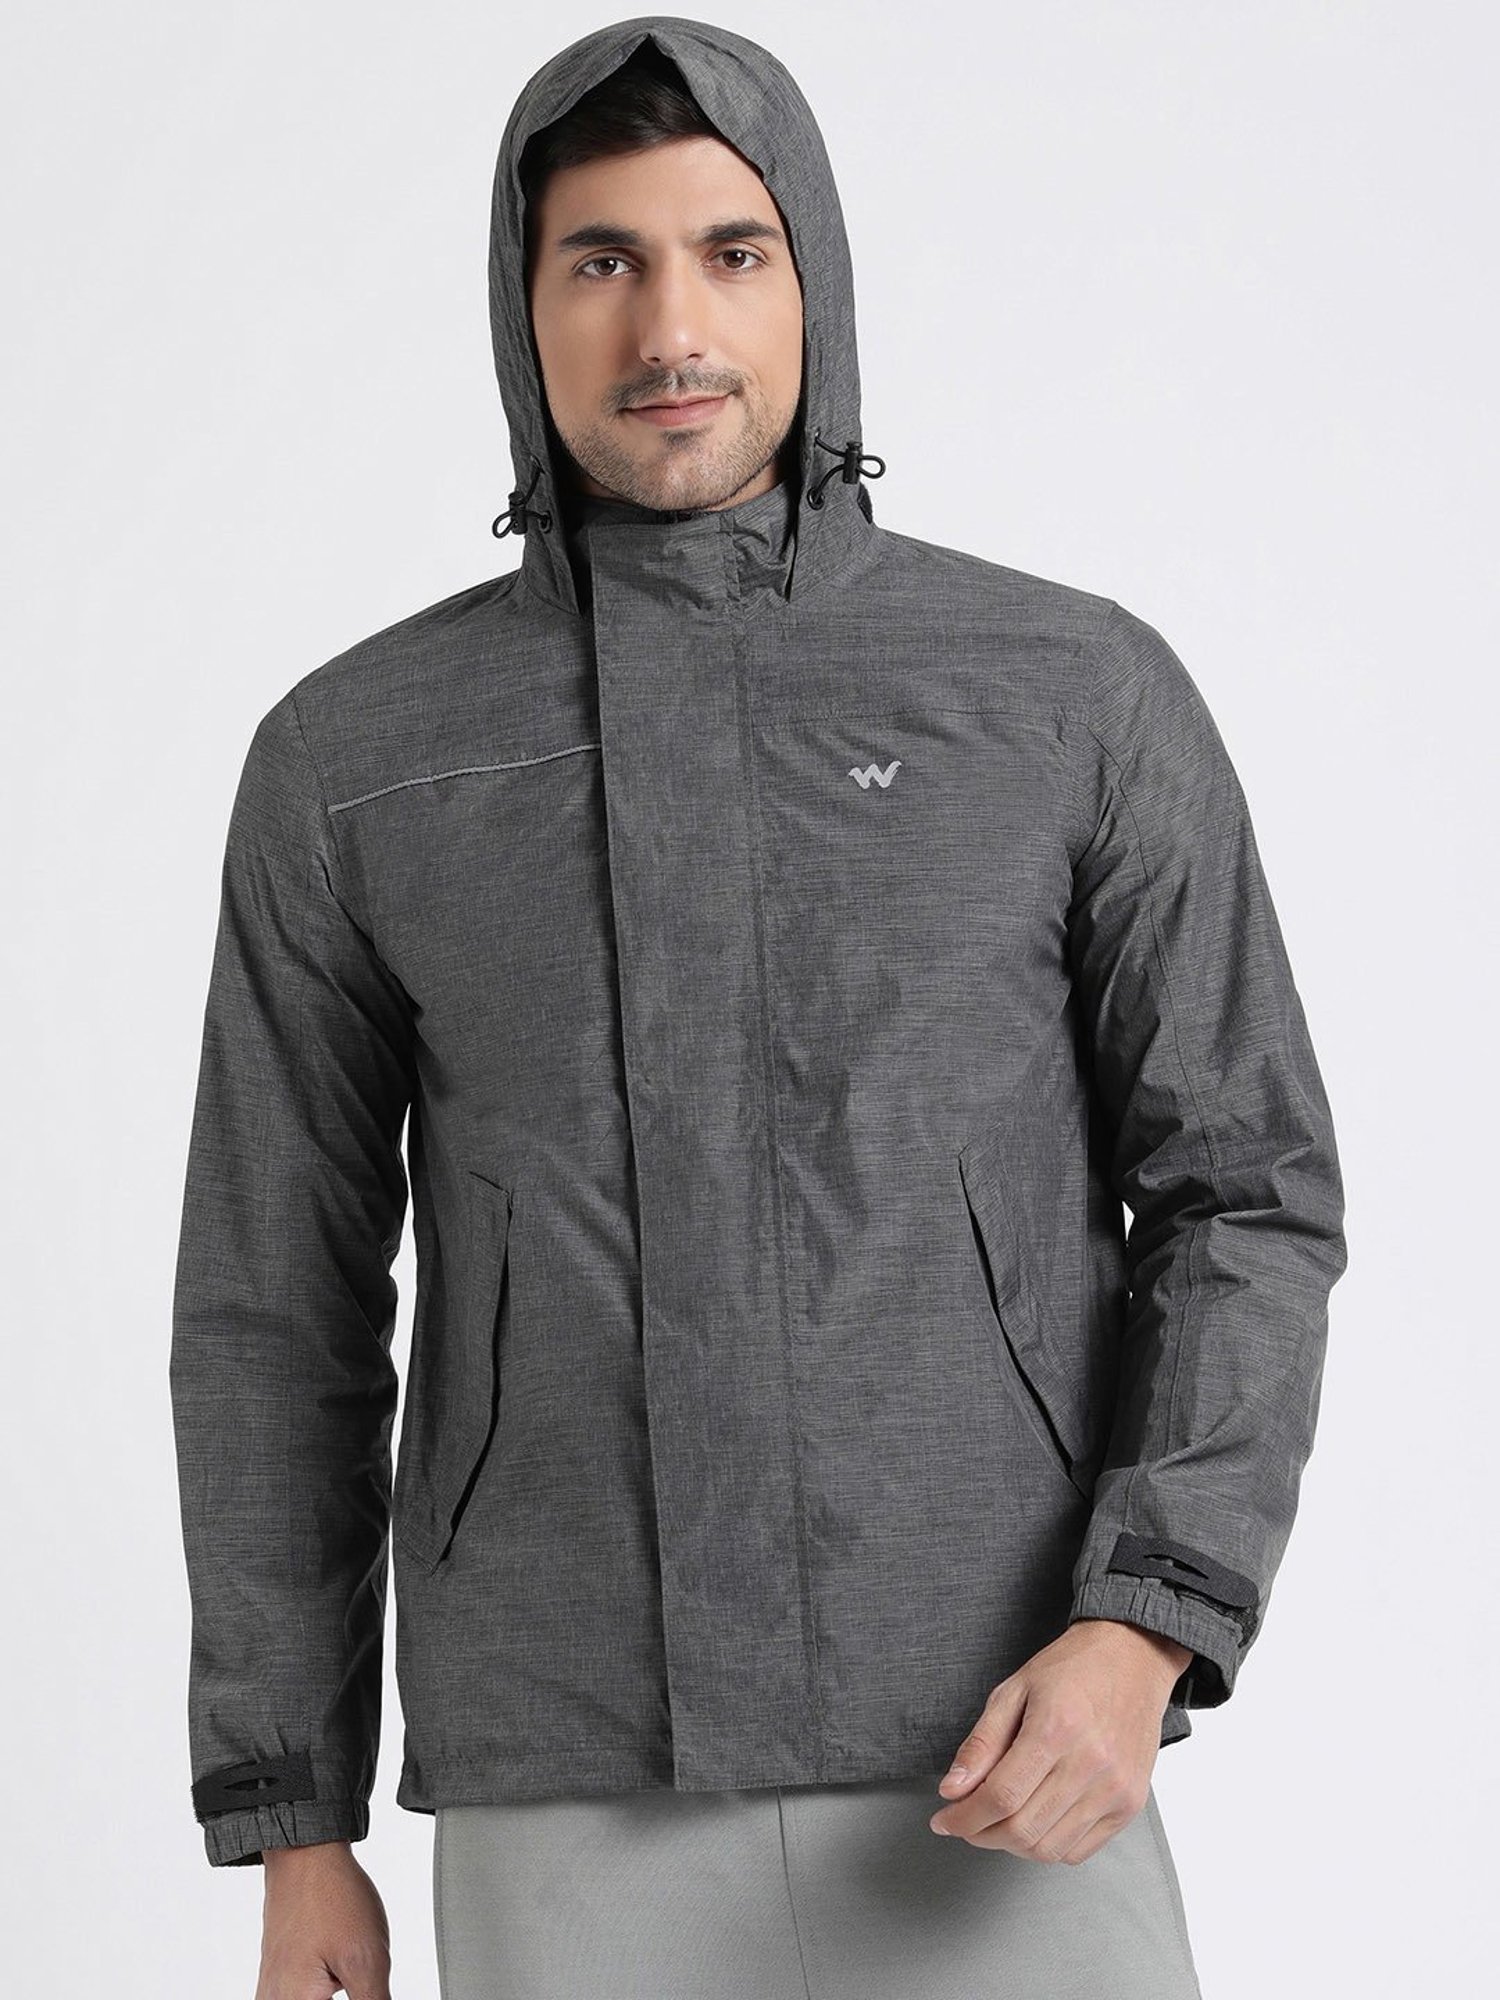 Buy Wildcraft Men Grey Polyester Colorblock Rain Jacket online